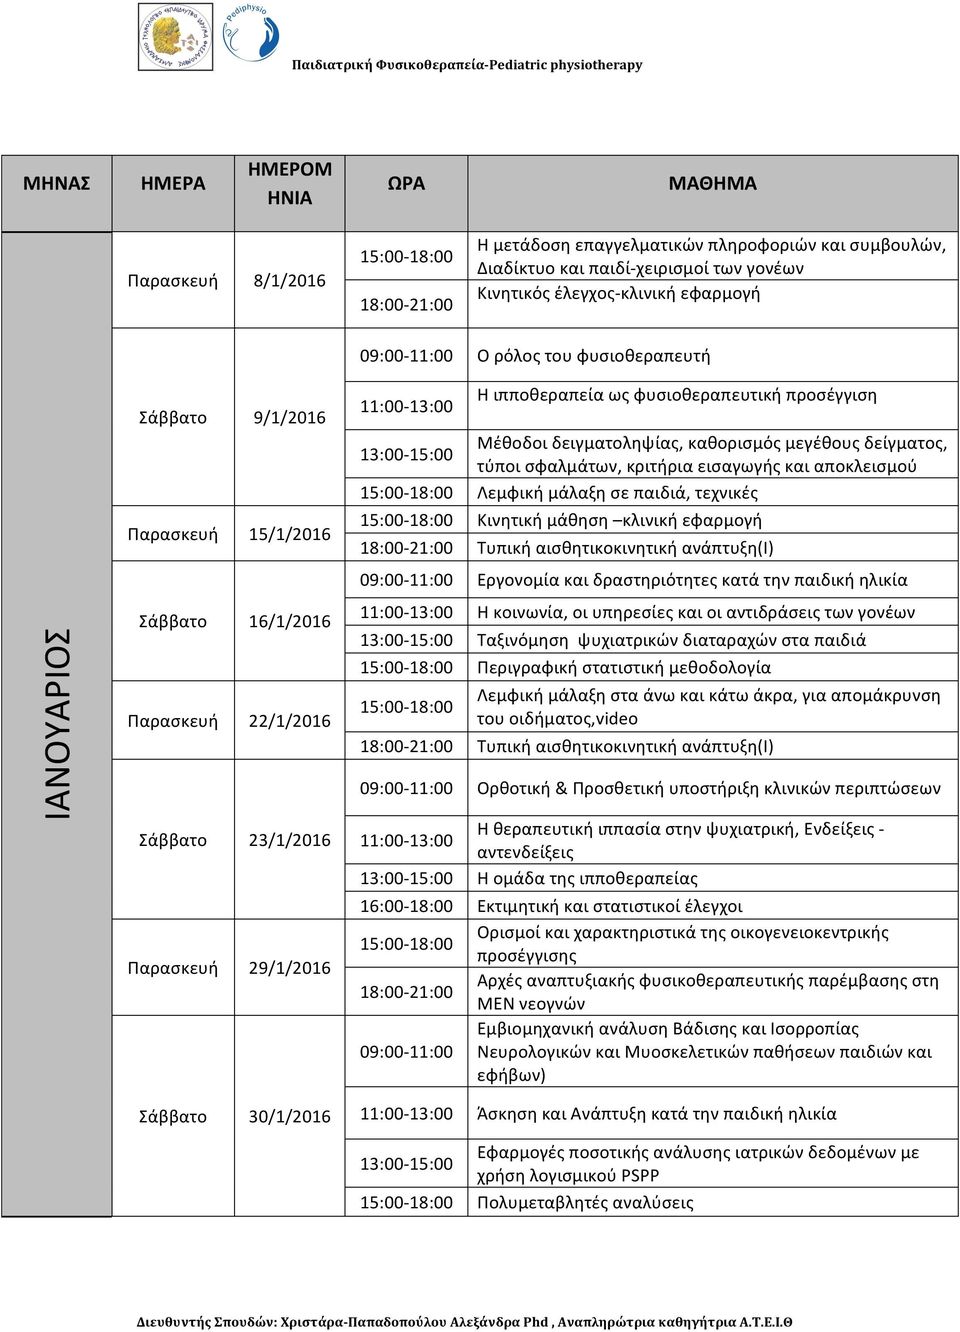 μεγέθους δείγματος, τύποι σφαλμάτων, κριτήρια εισαγωγής και αποκλεισμού Λεμφική μάλαξη σε παιδιά, τεχνικές Κινητική μάθηση κλινική εφαρμογή Τυπική αισθητικοκινητική ανάπτυξη(i) 09:00-11:00 Εργονομία